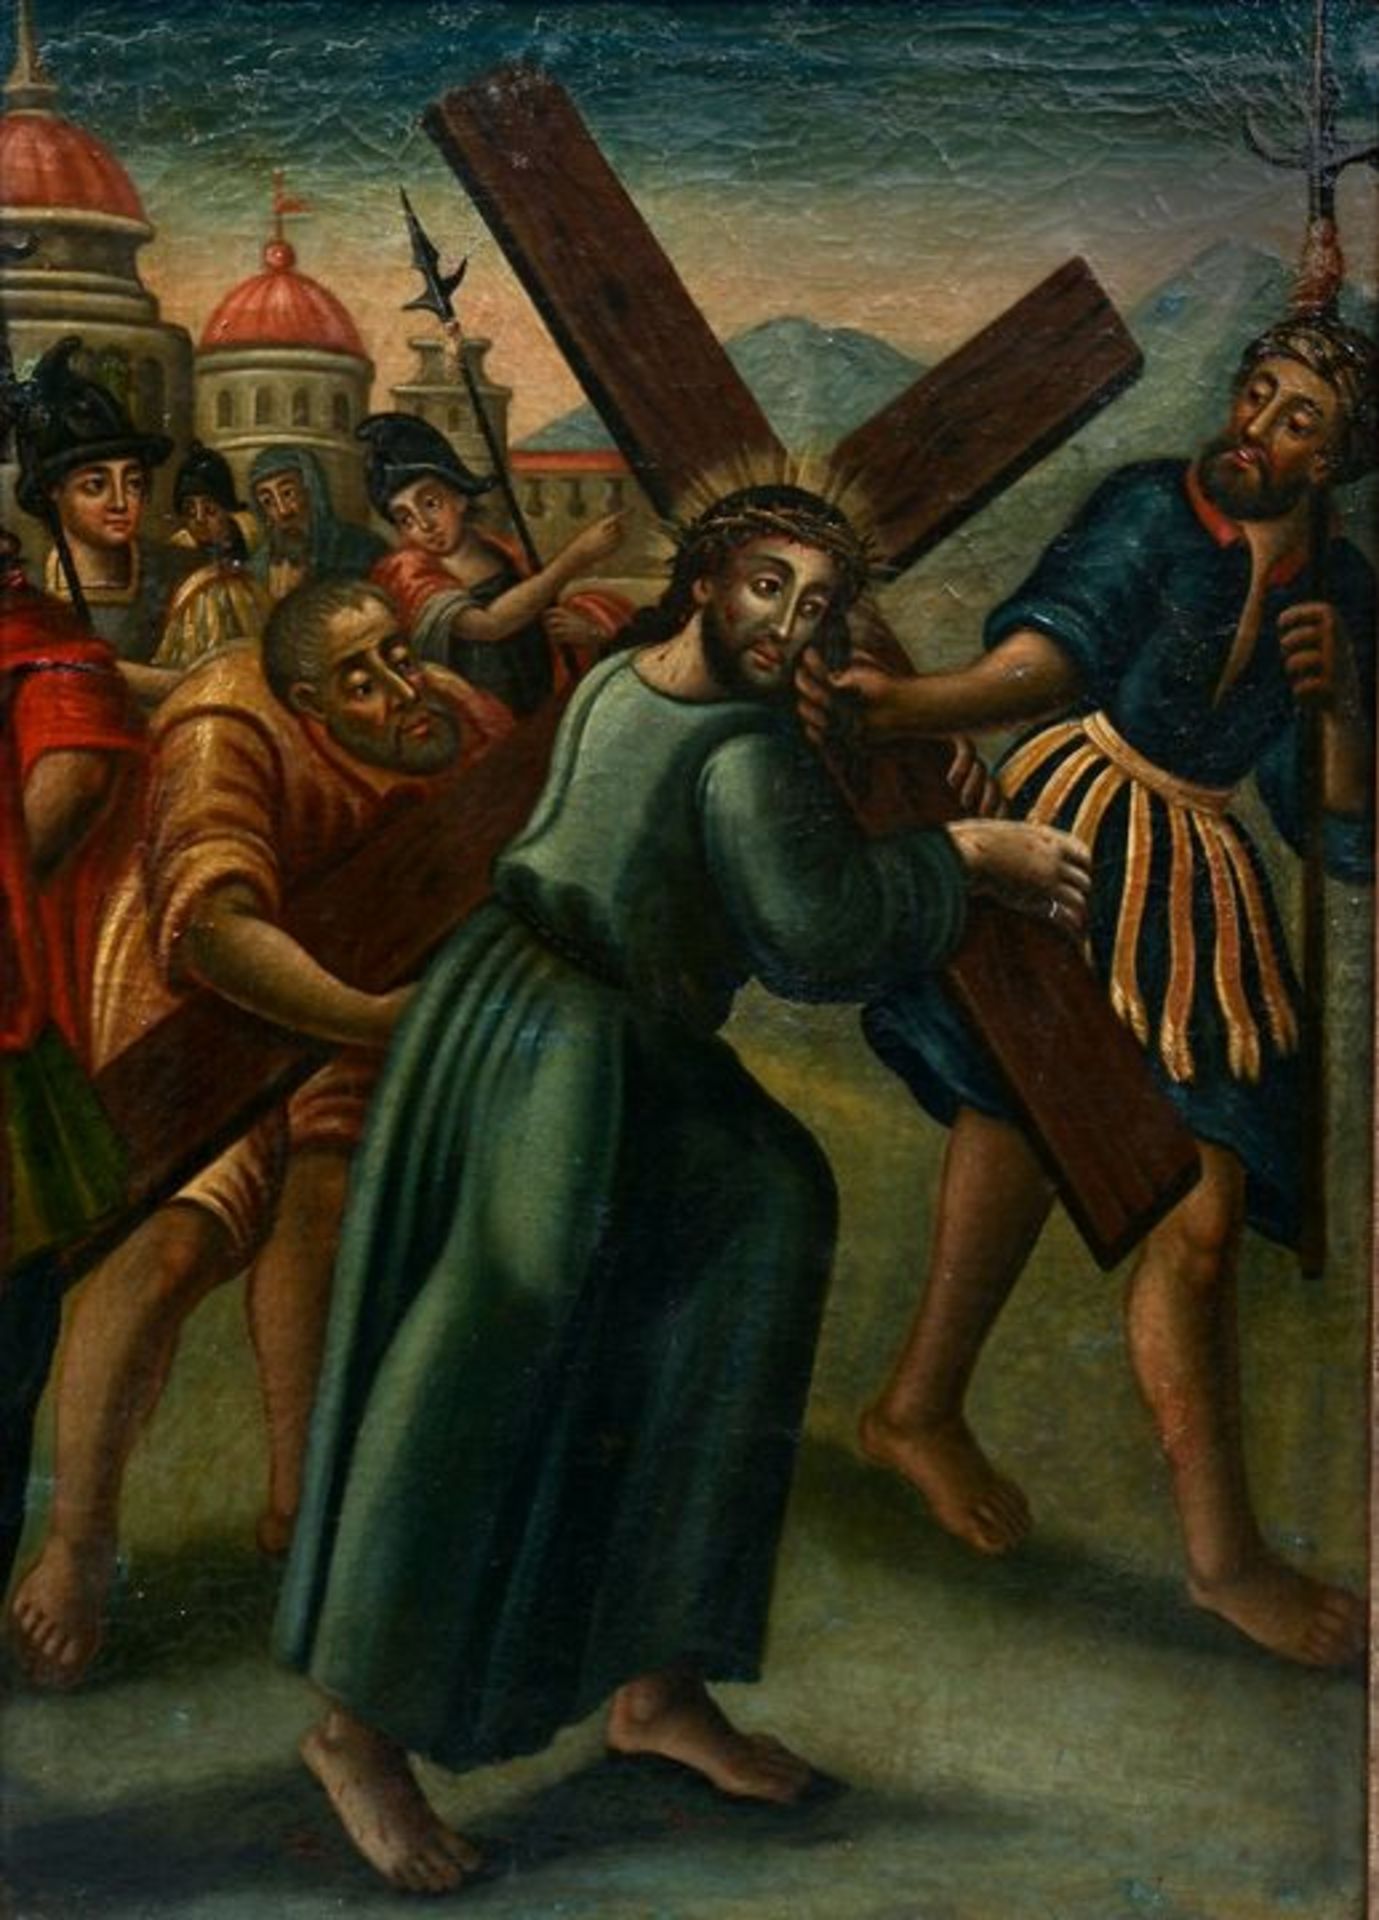 Unbekannt; Kreuztragung / unknown artist, Christ carrying the cross